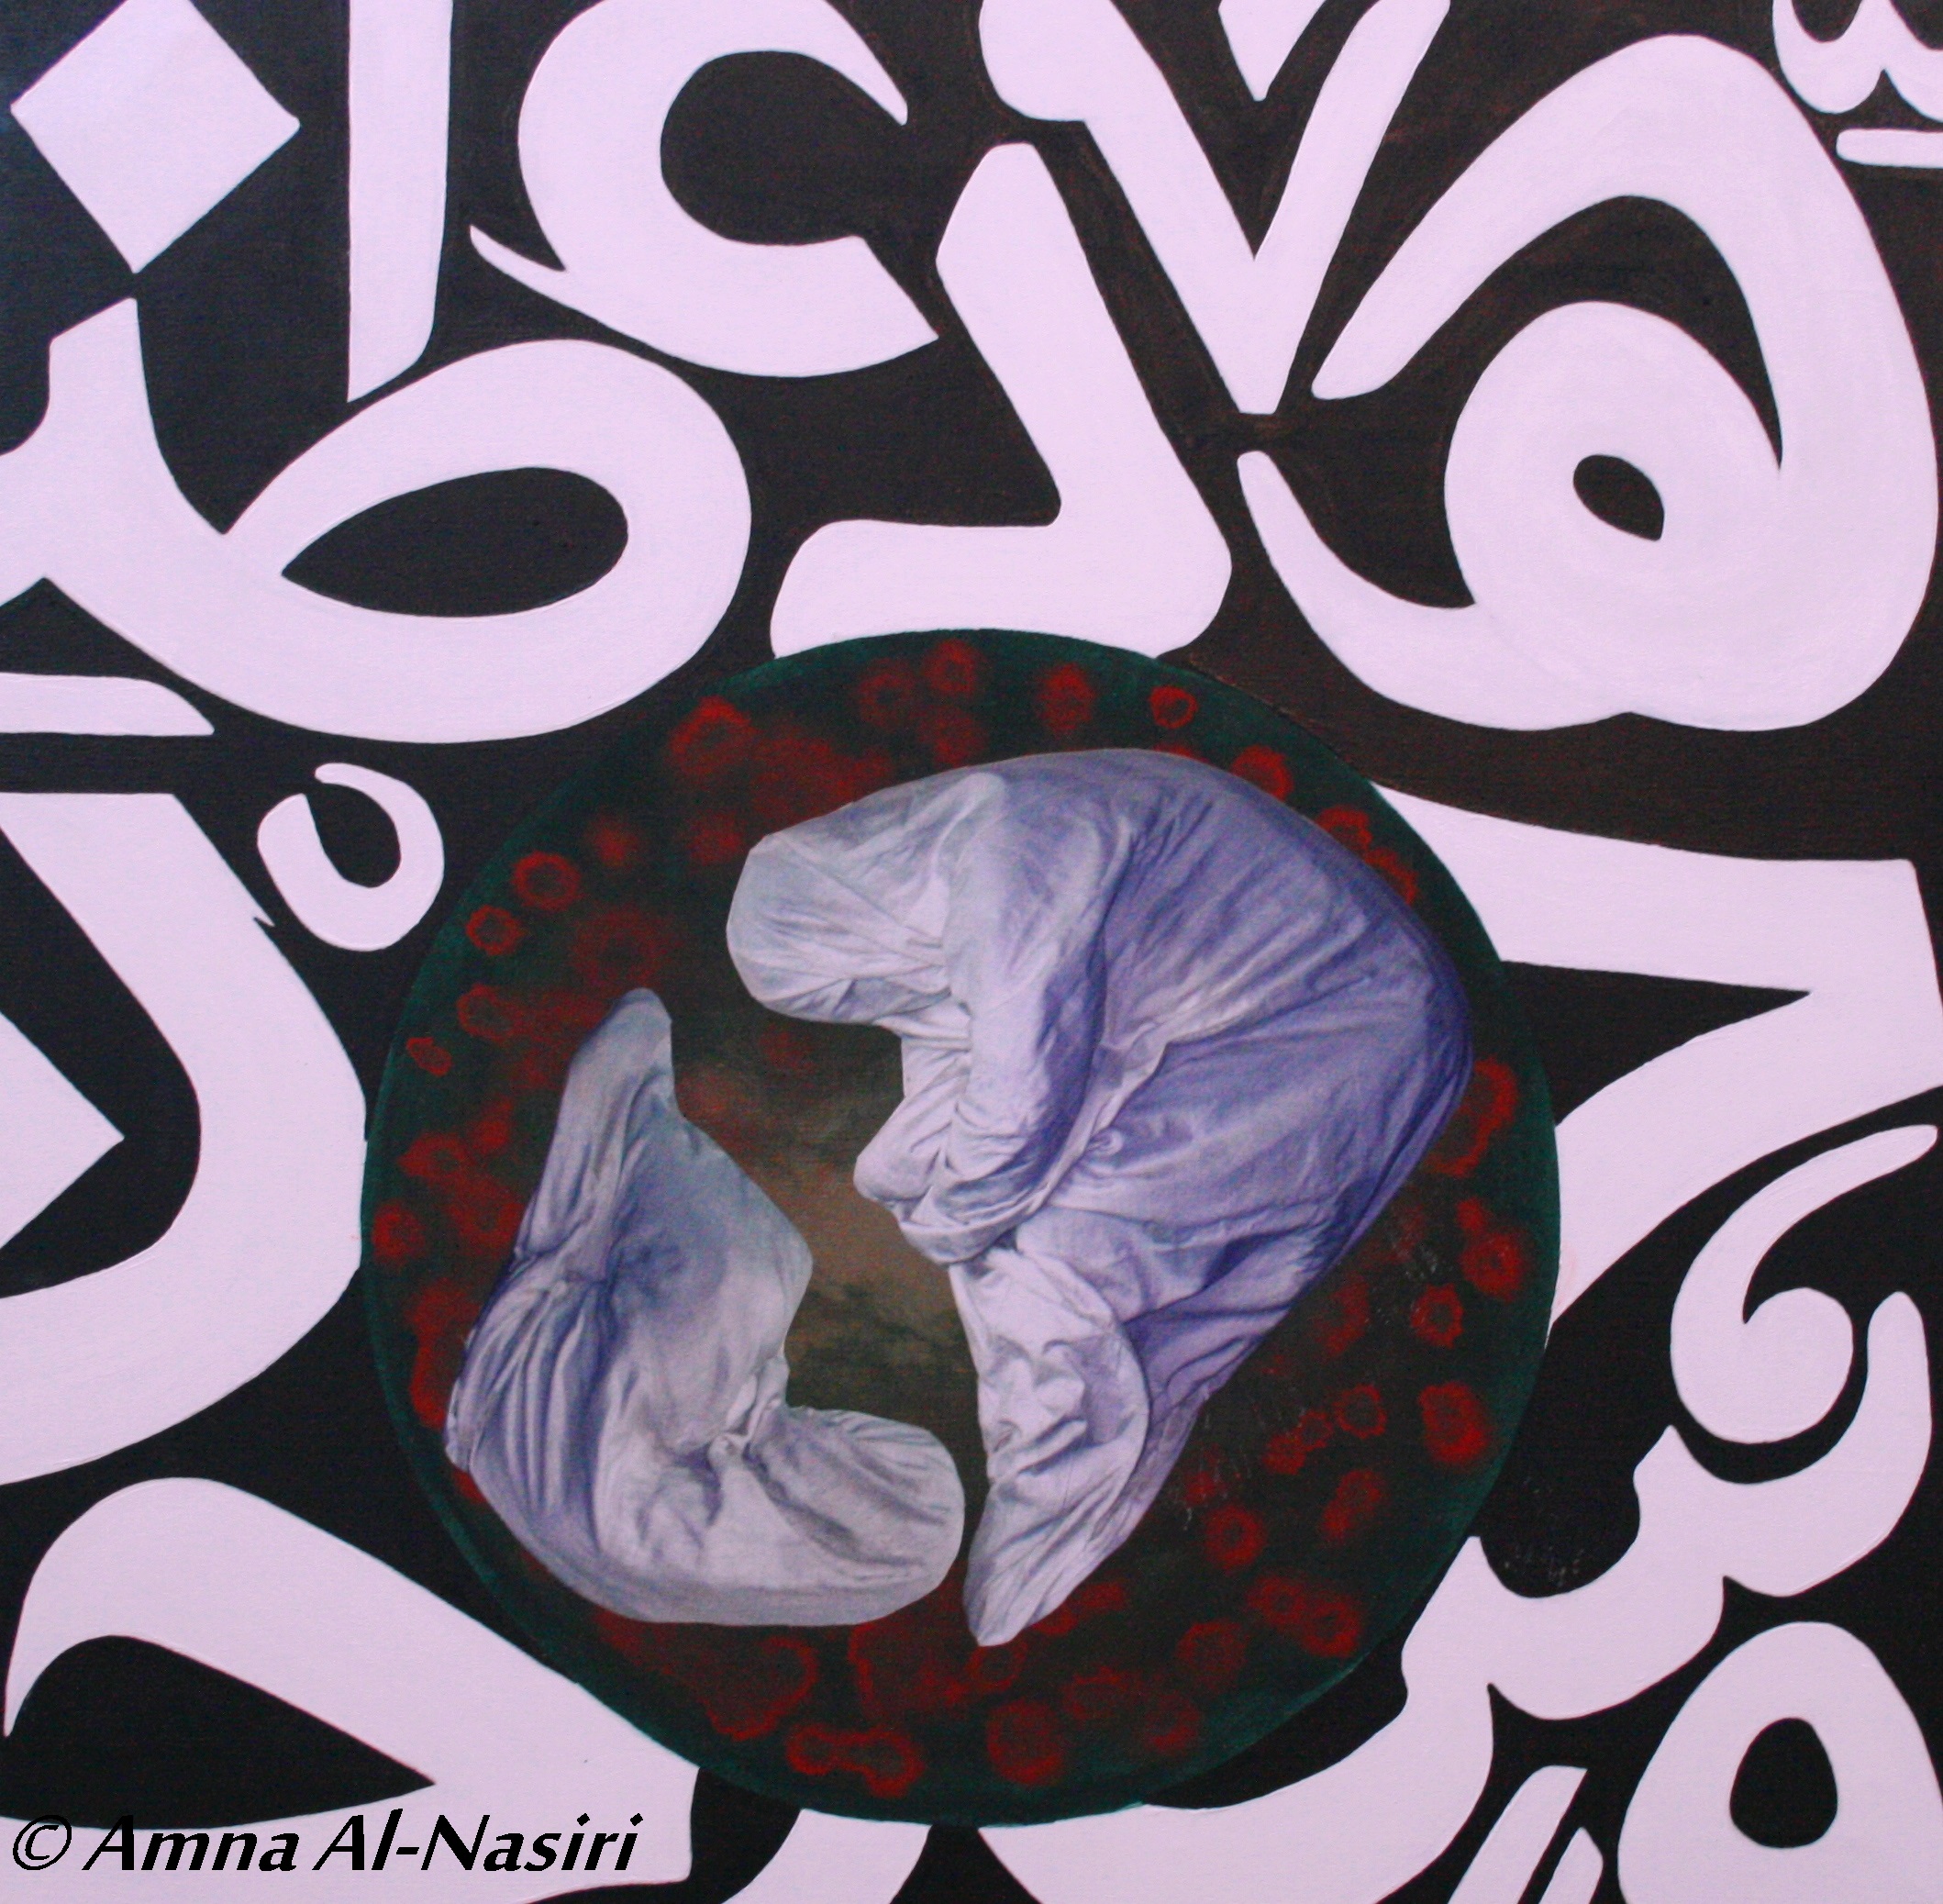 Amna Al-Nasiri©